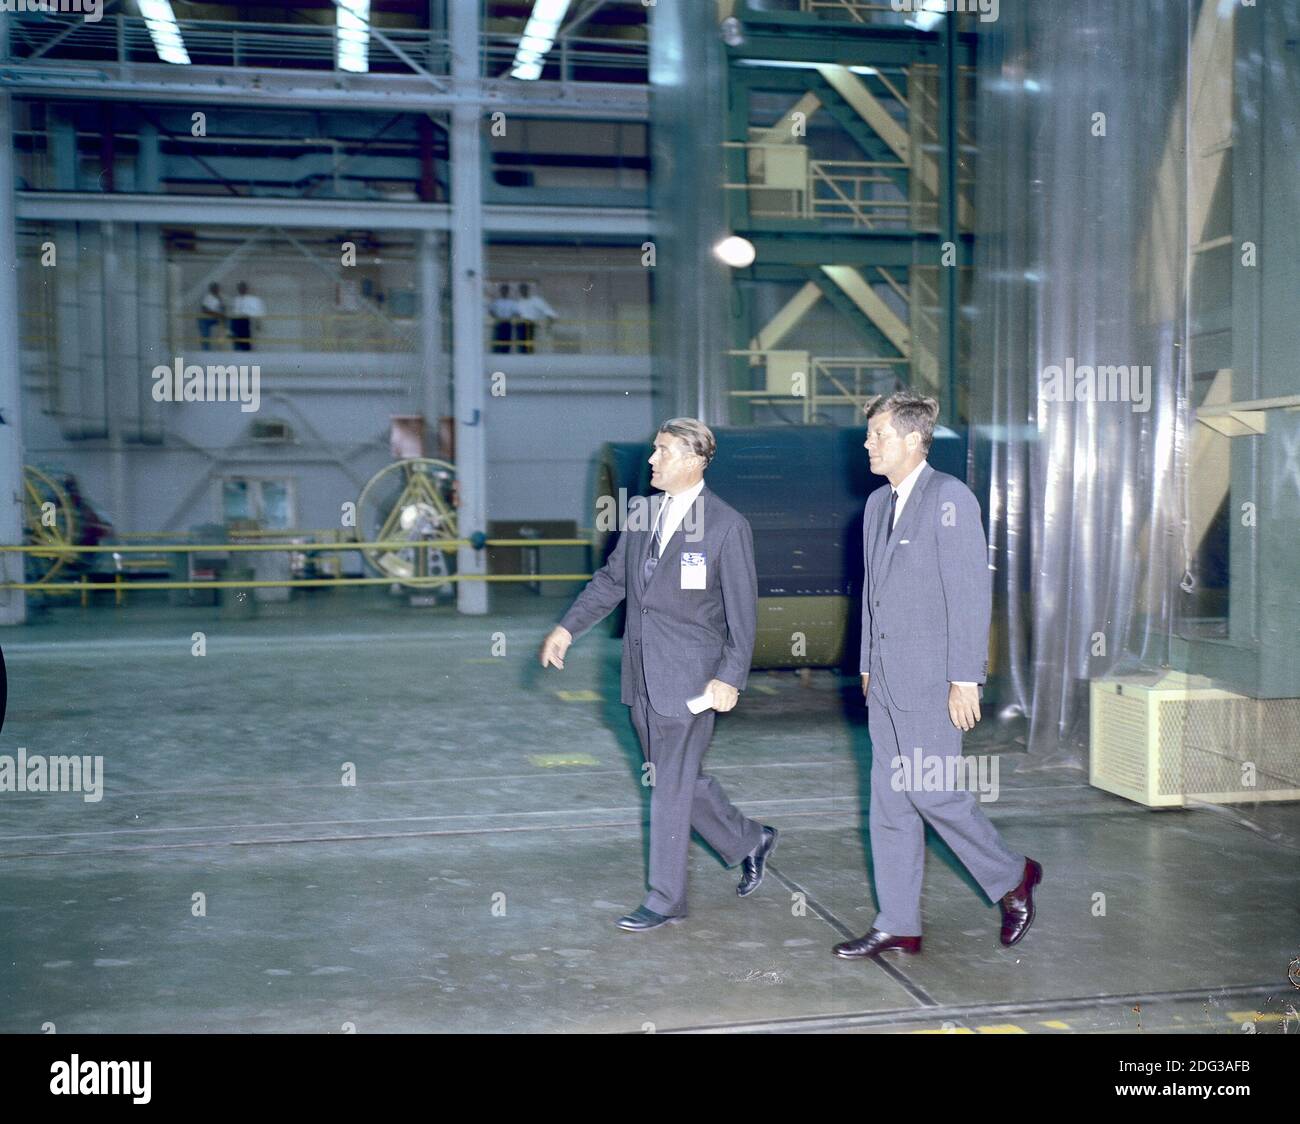 El Presidente de los Estados Unidos, John F. Kennedy, visitó el Centro Marshall de Vuelos Espaciales (MSFC) en Huntsville, Alabama, EE.UU., el 11 de septiembre de 1962. Aquí el Presidente Kennedy y el Dr. Wernher von Braun, Director del MSFC, recortían uno de los laboratorios. Foto de la NASA vía CNP Foto de stock